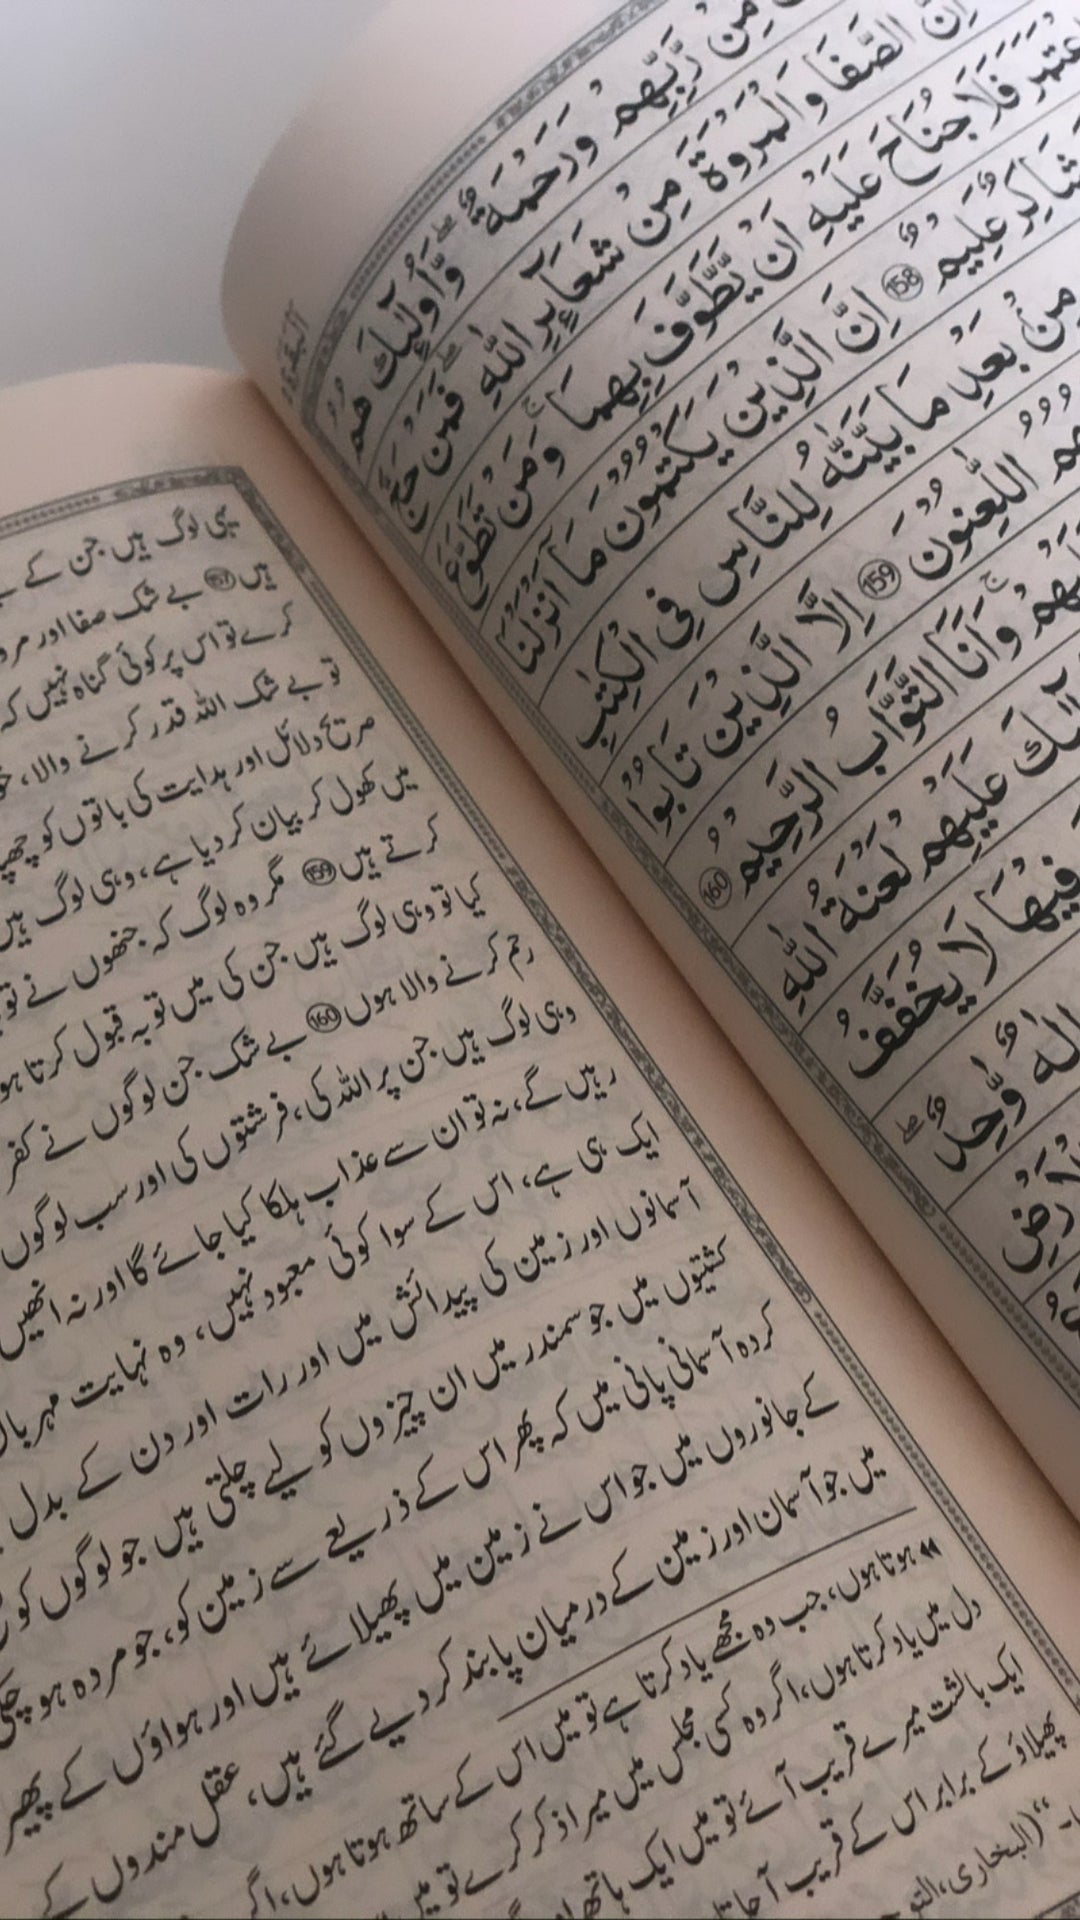 تفسير احسان الكلام الأردية ترجمة القرآن الكريم